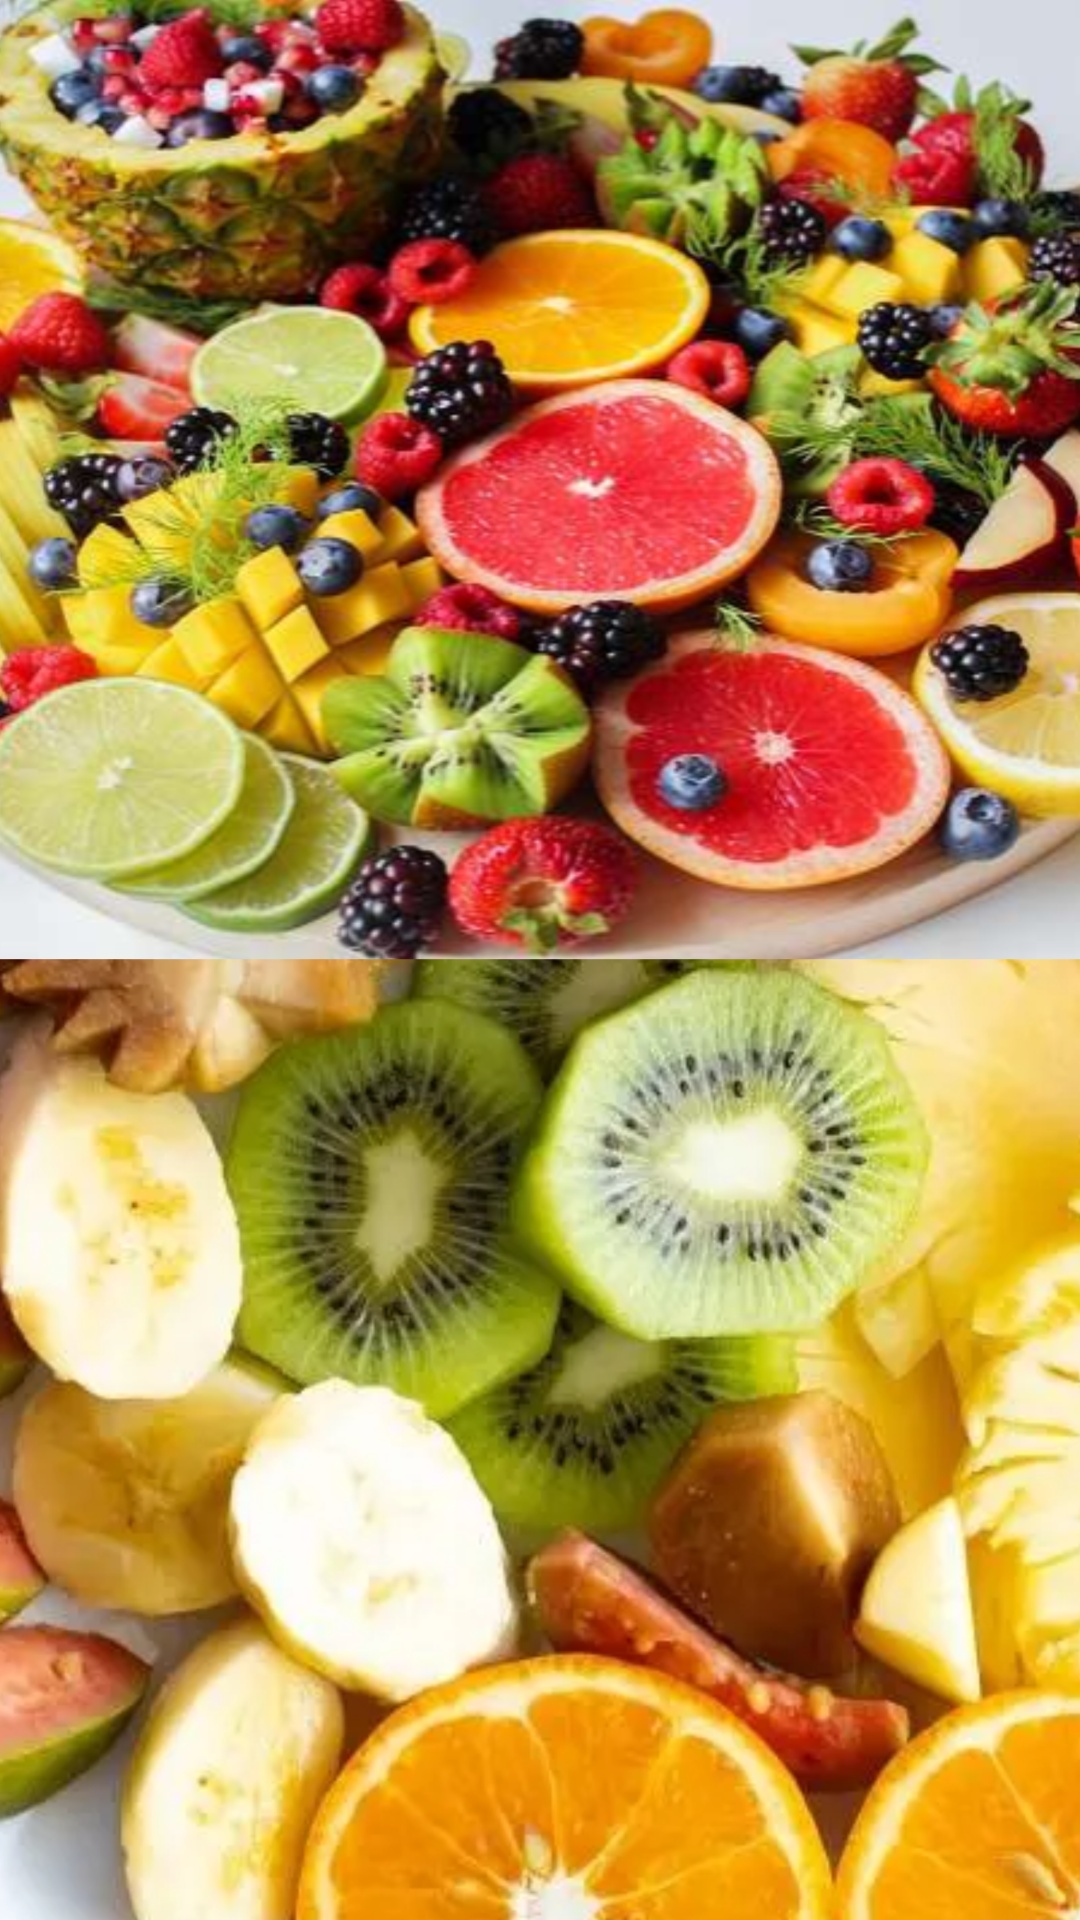 खट्टे फलों को खाने का सही समय क्या है?